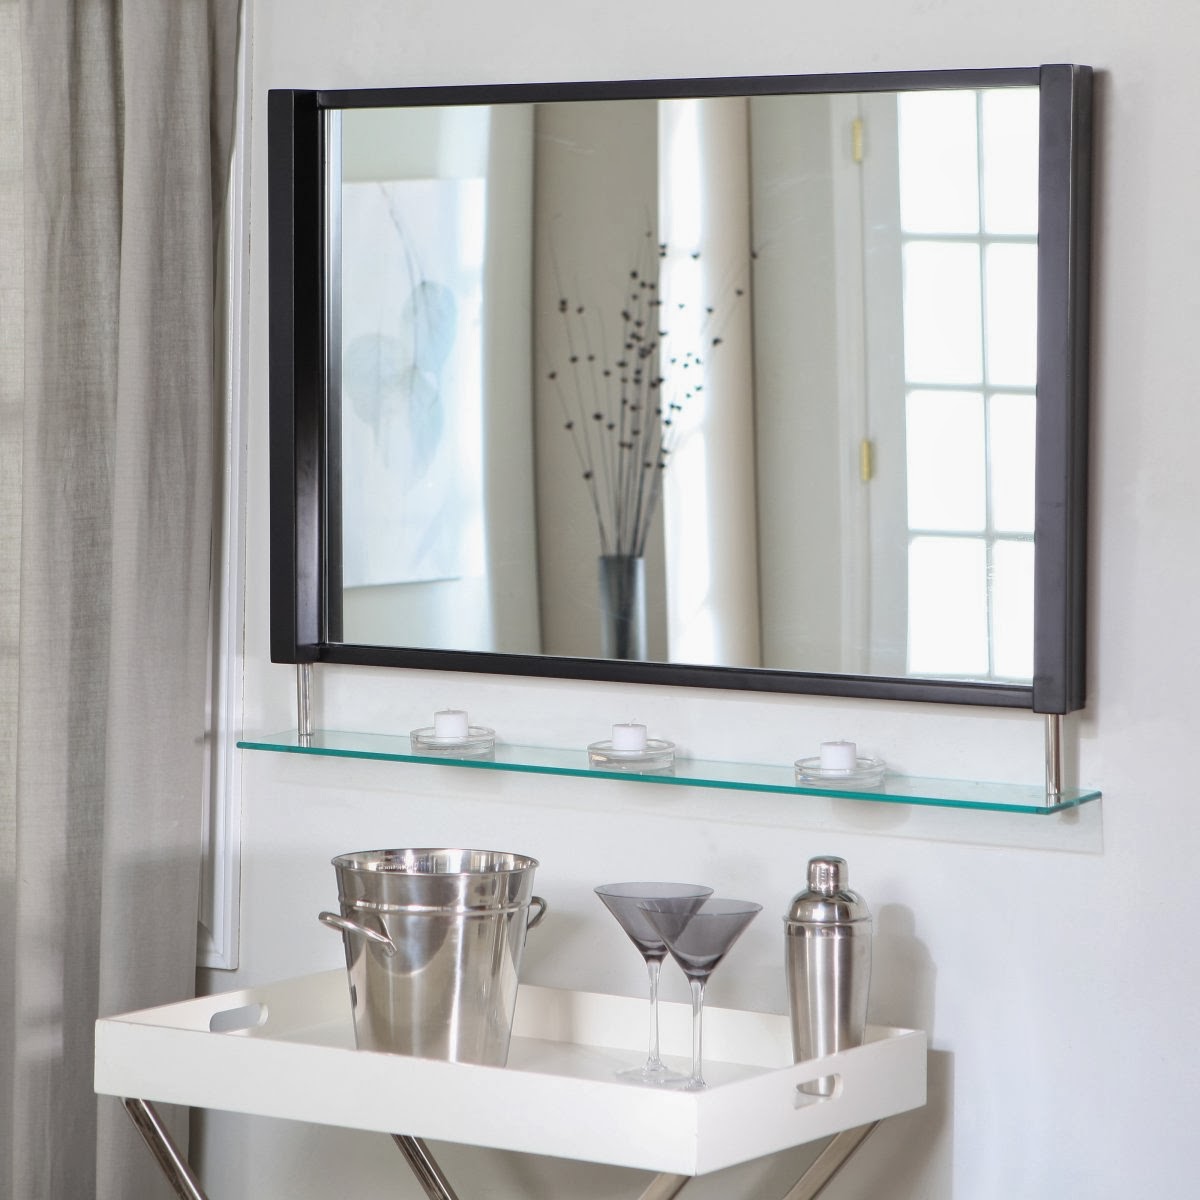 Bathroom Wall Mirrors - Bedroom and Bathroom Ideas